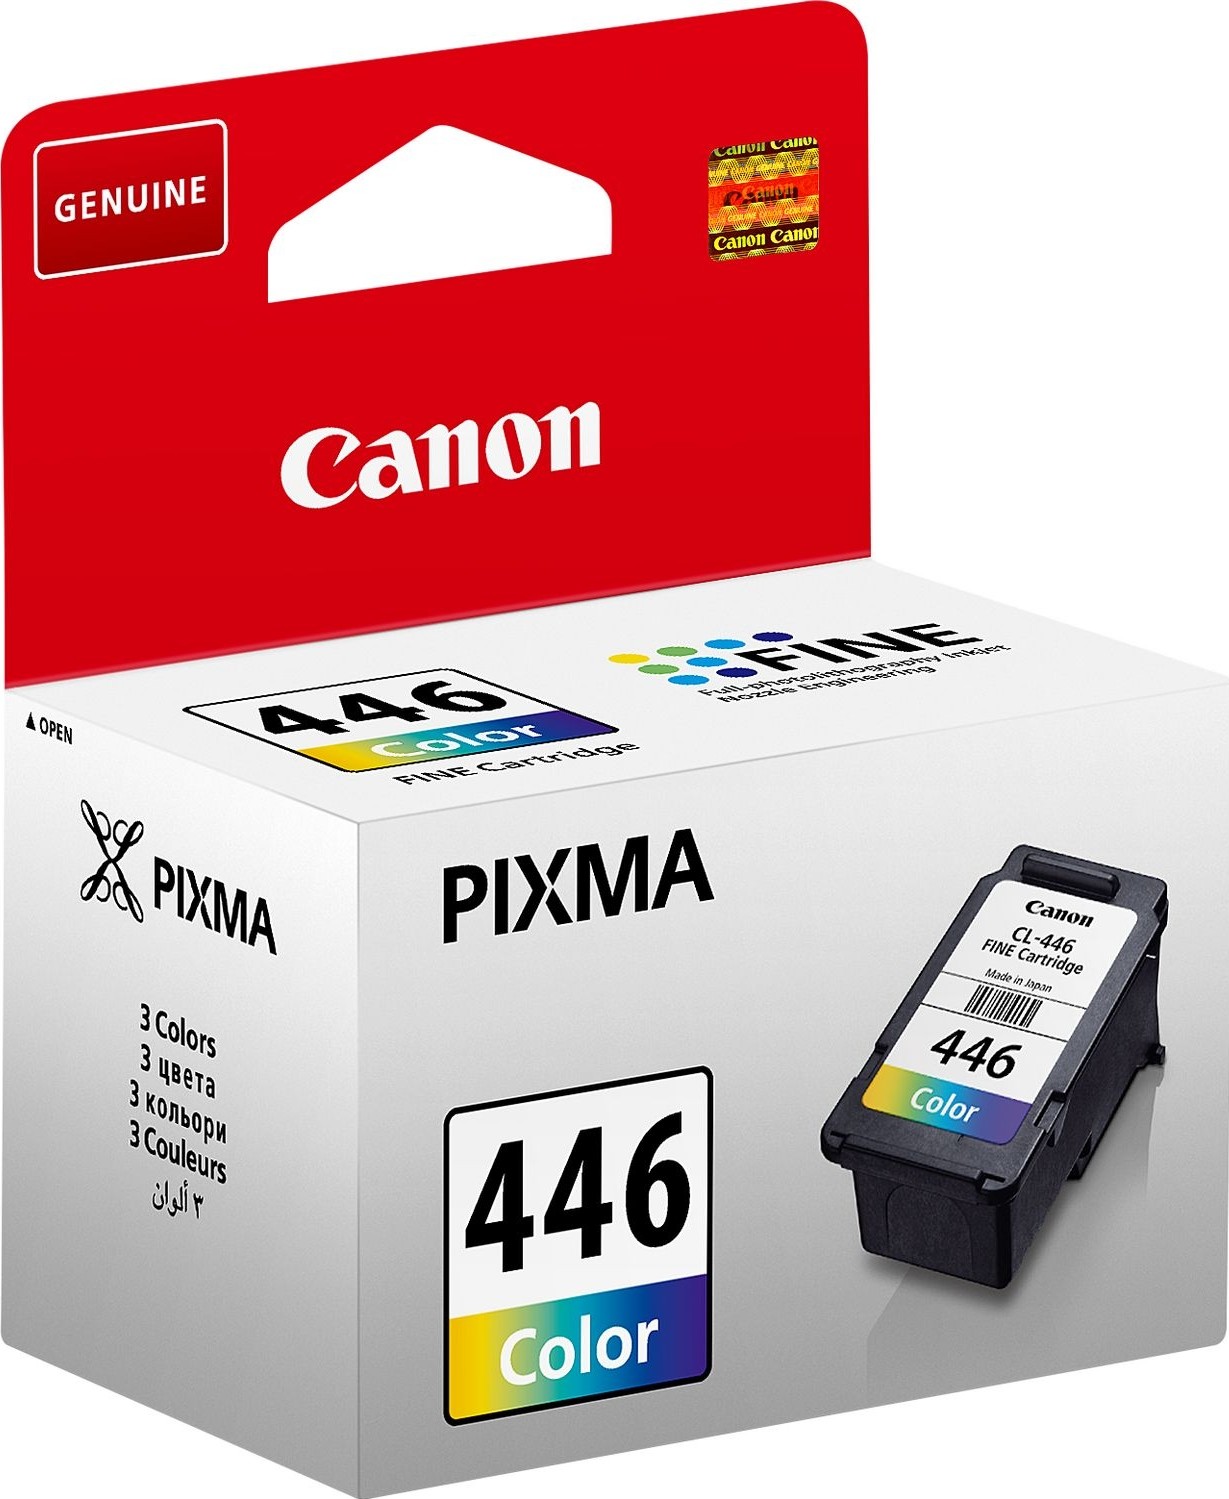 Canon Pixma CL-446 Color Cartridge